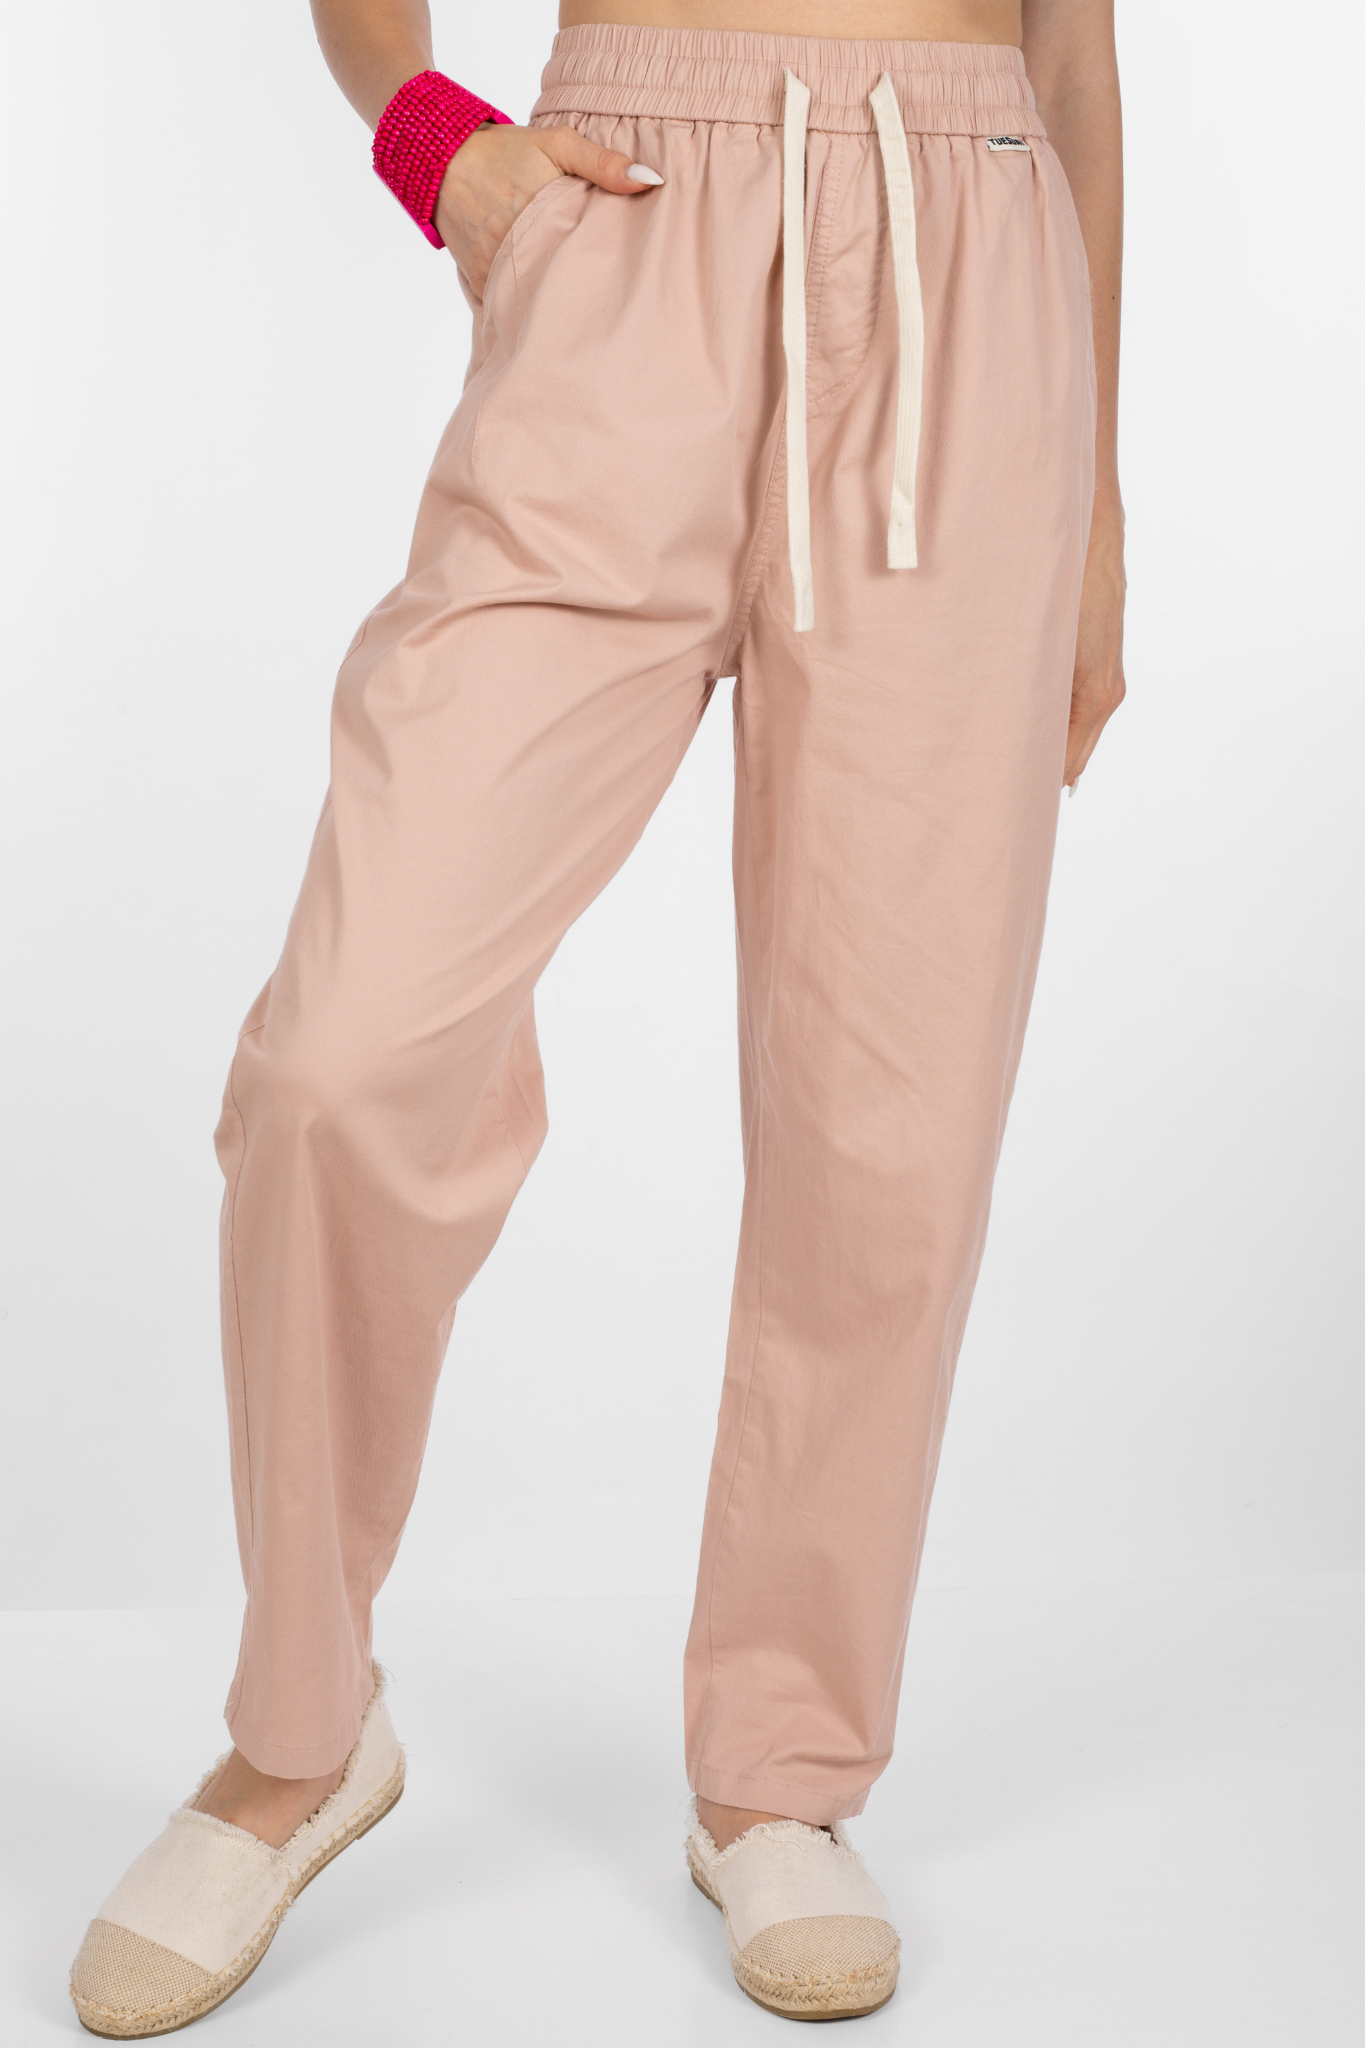 Дамски панталон от памук в розово с ластик и връзка в талията